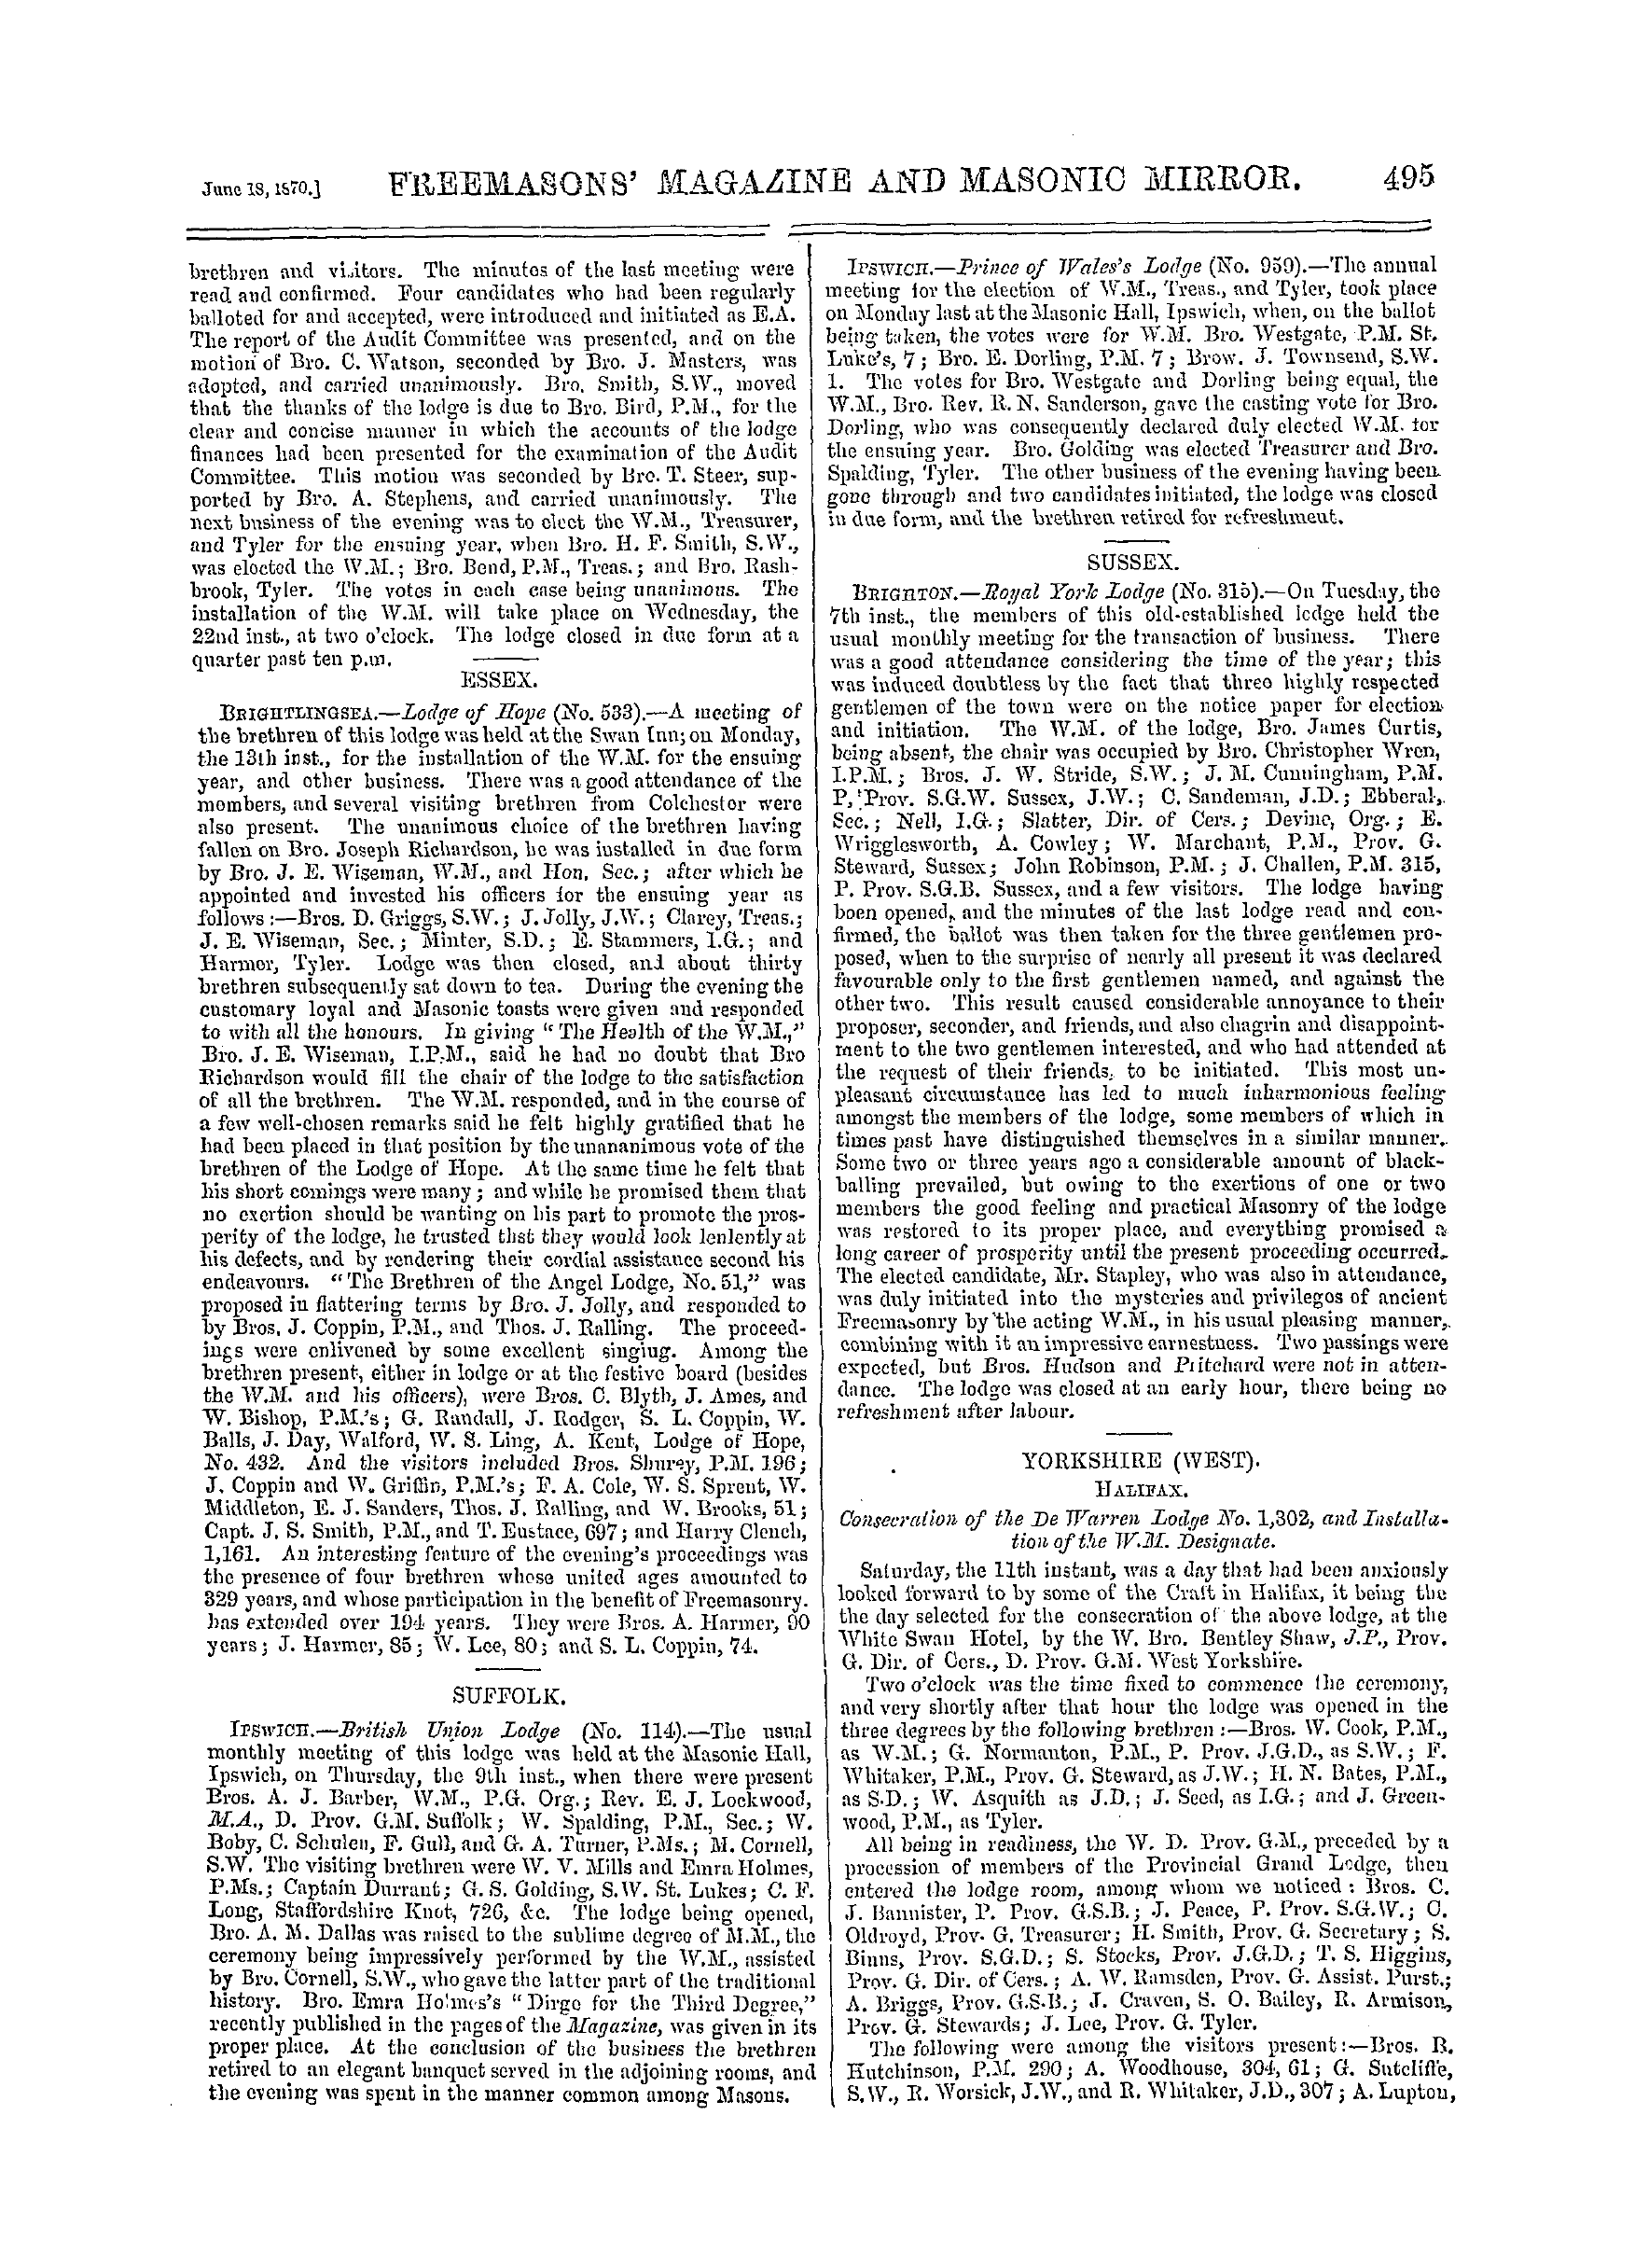 The Freemasons' Monthly Magazine: 1870-06-18: 15